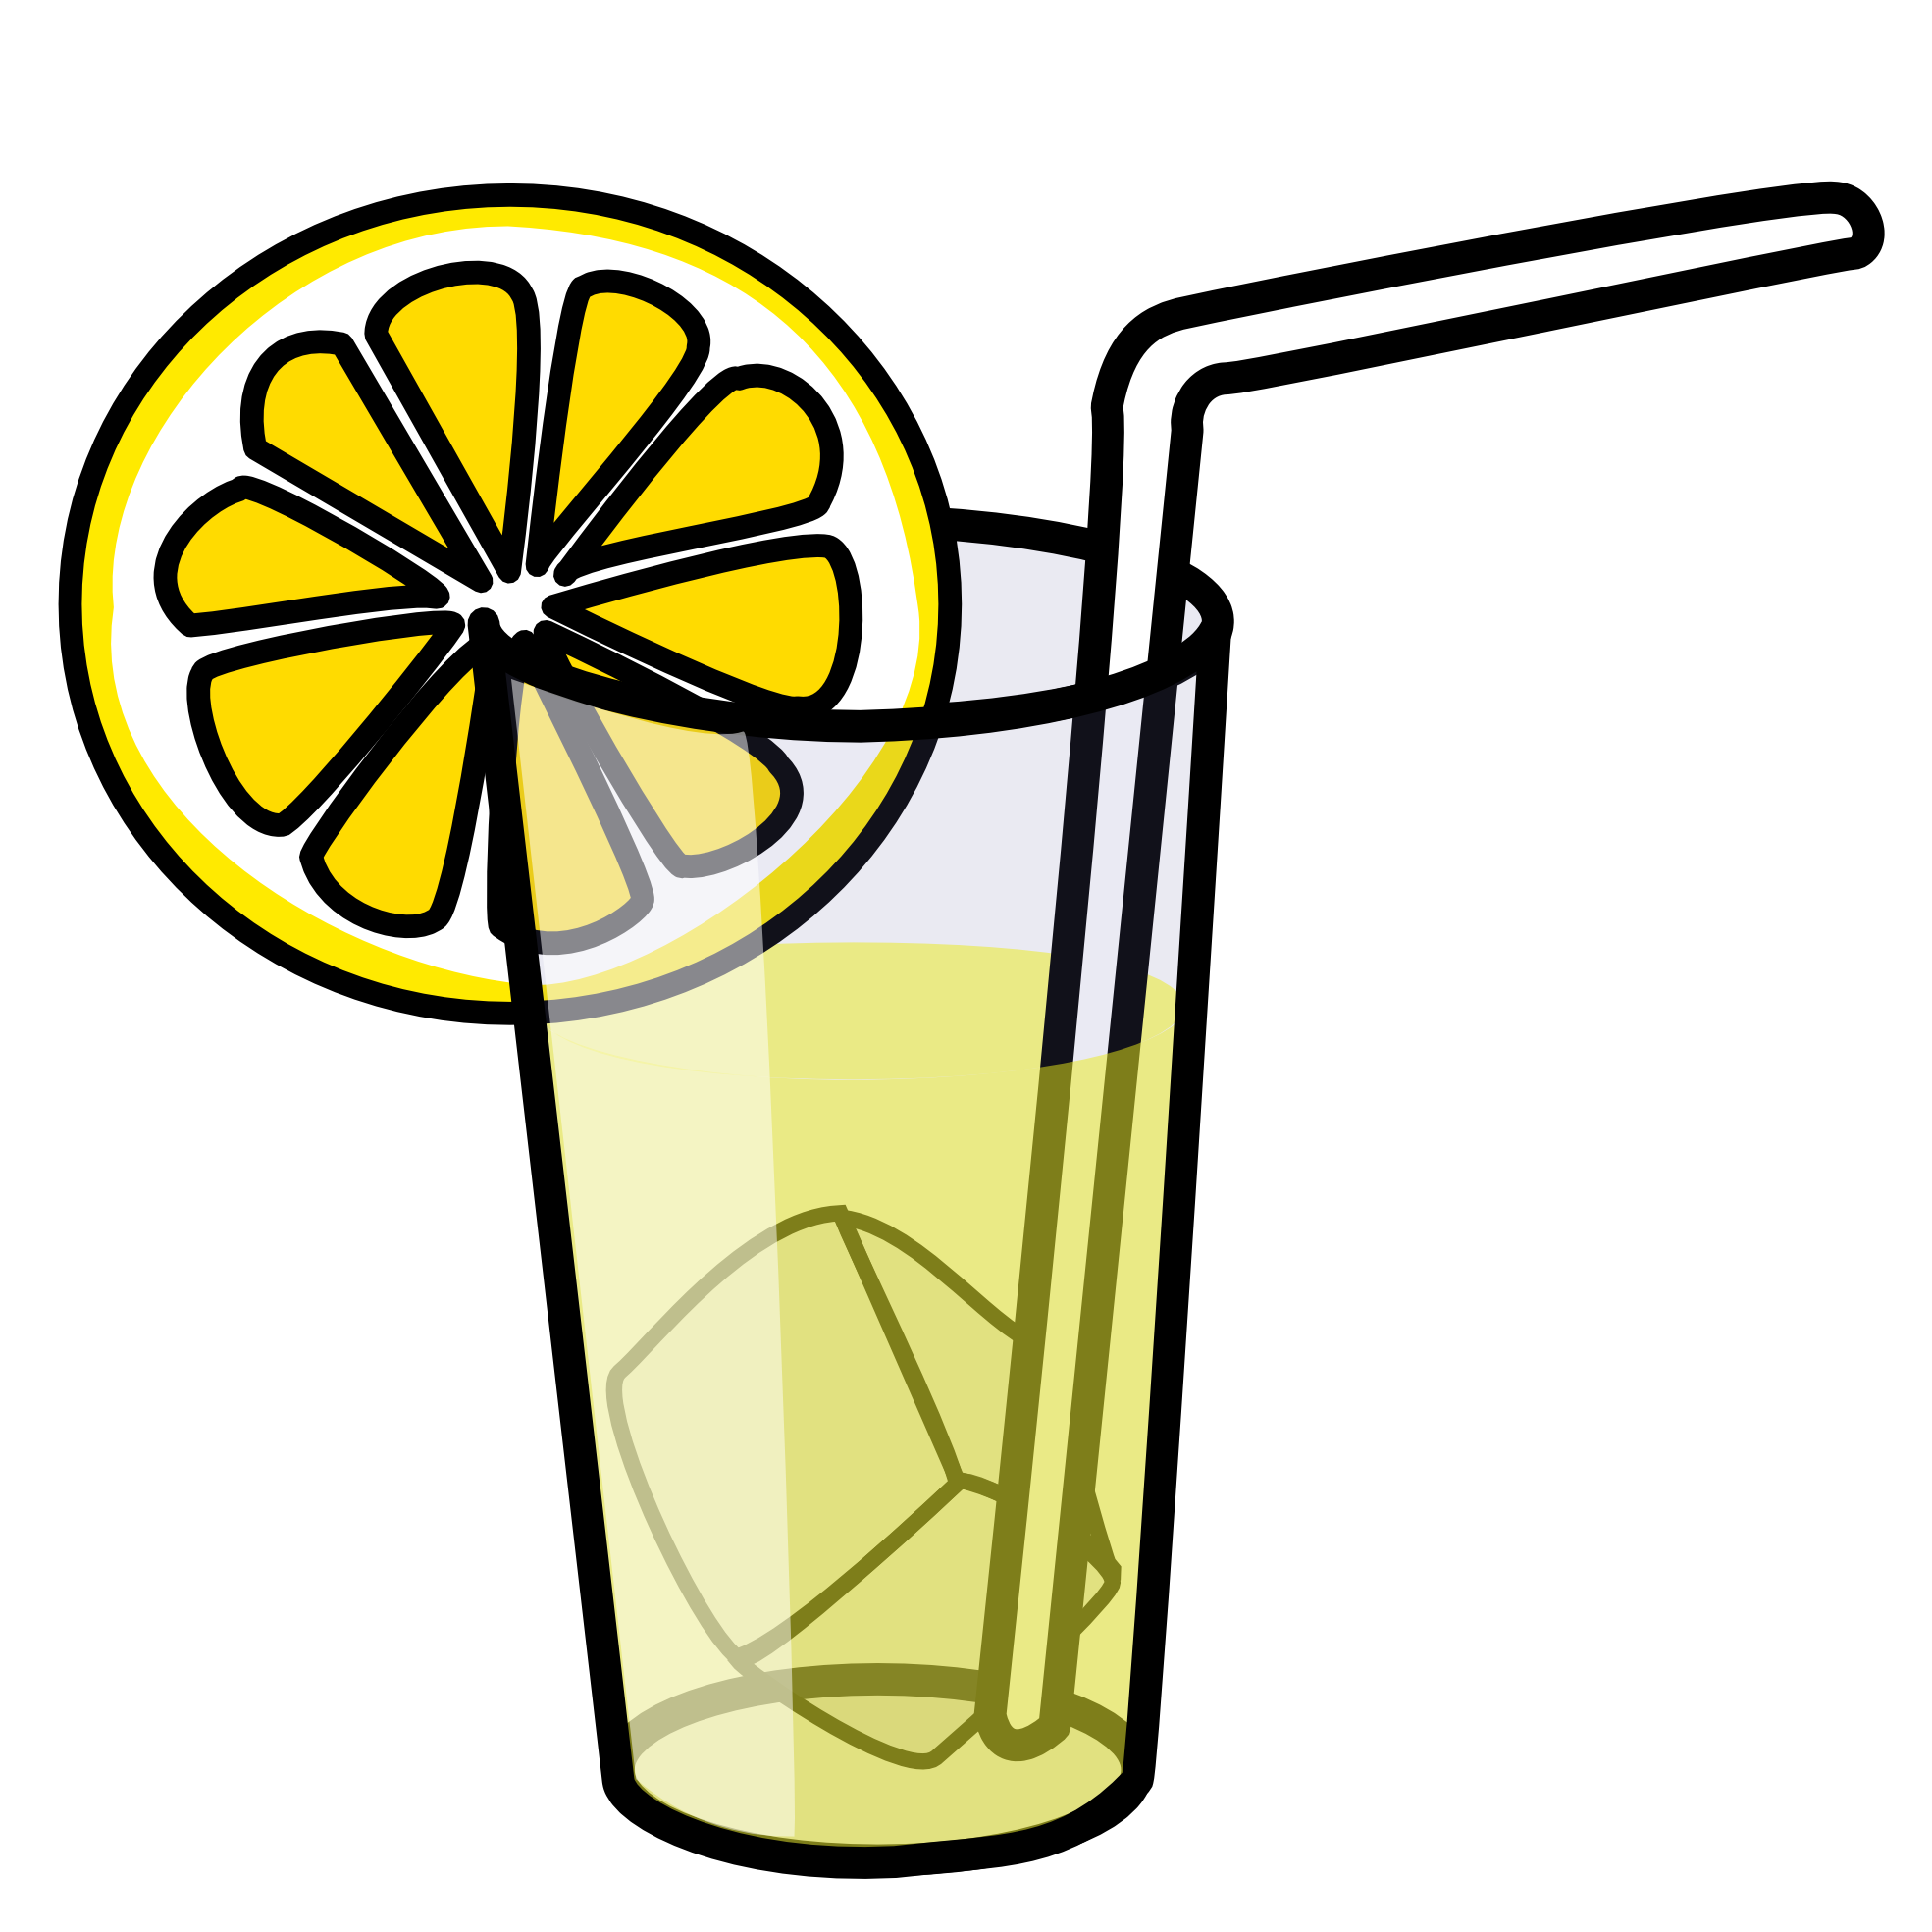 lemon juice clipart - photo #3